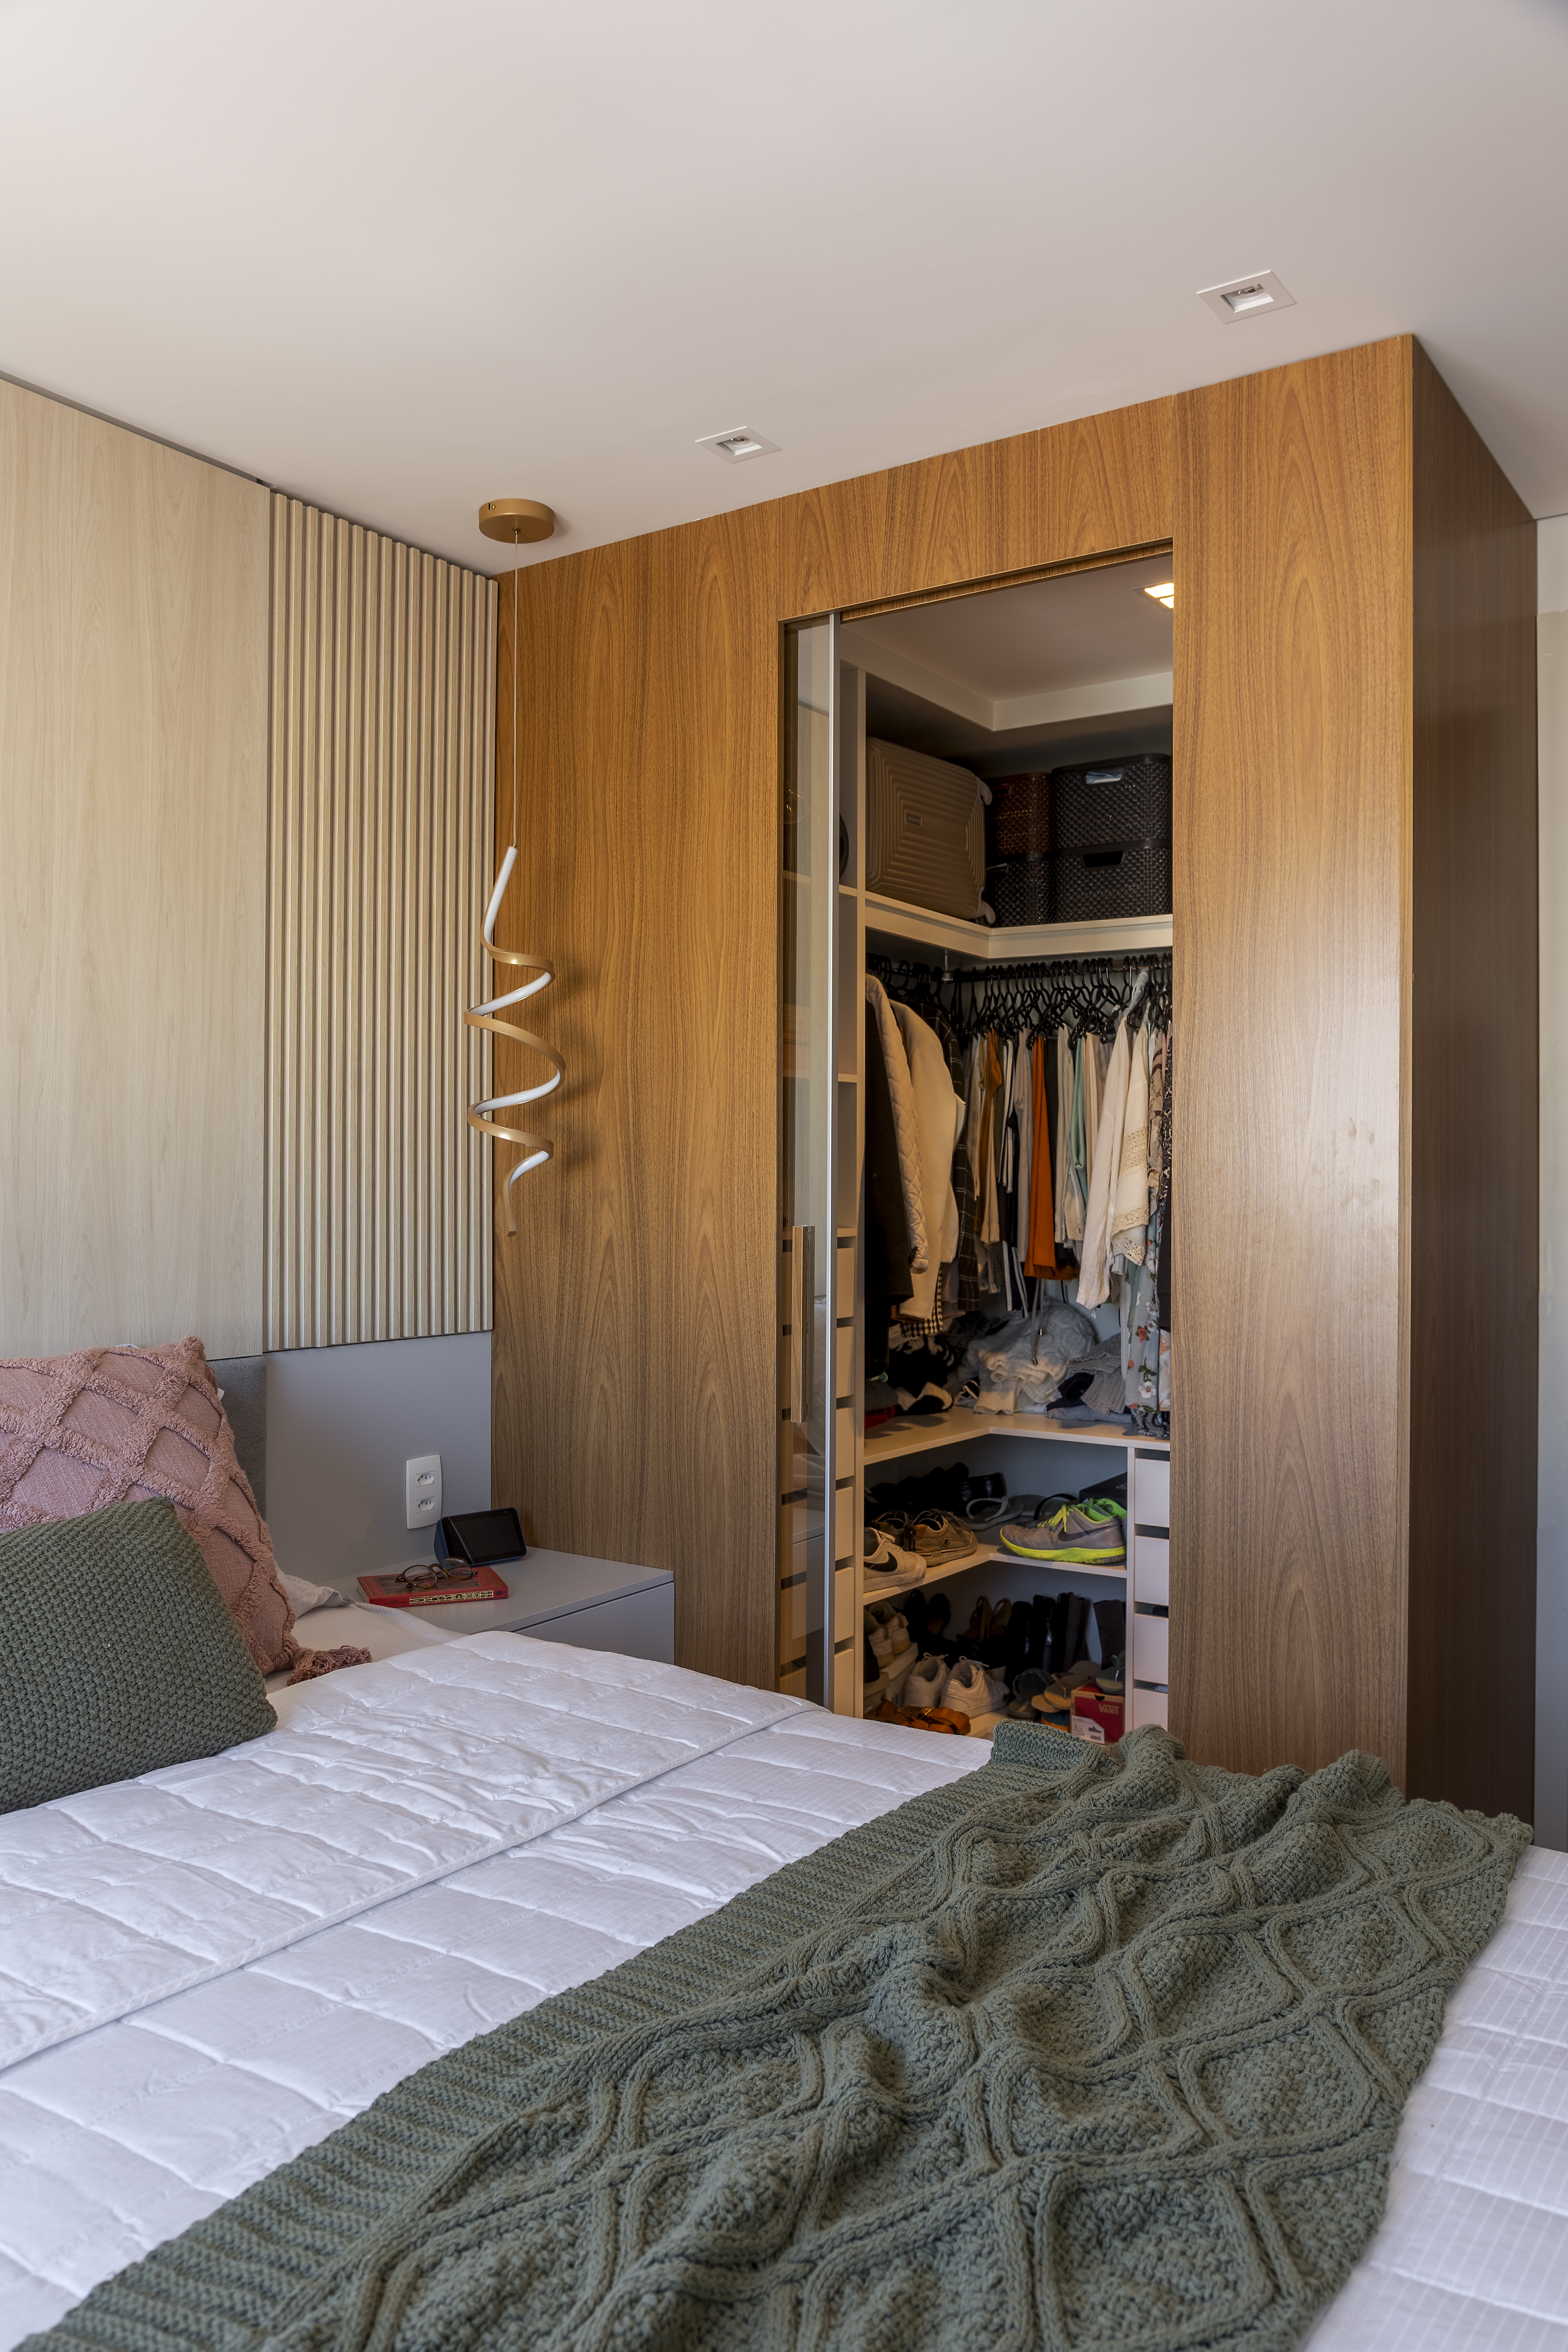 Funkos e livros ganham destaque em reforma de apê de 64 m². Projeto de Vitoria Lacerda. Na foto, quarto com painel de madeira clara ripada, closet.